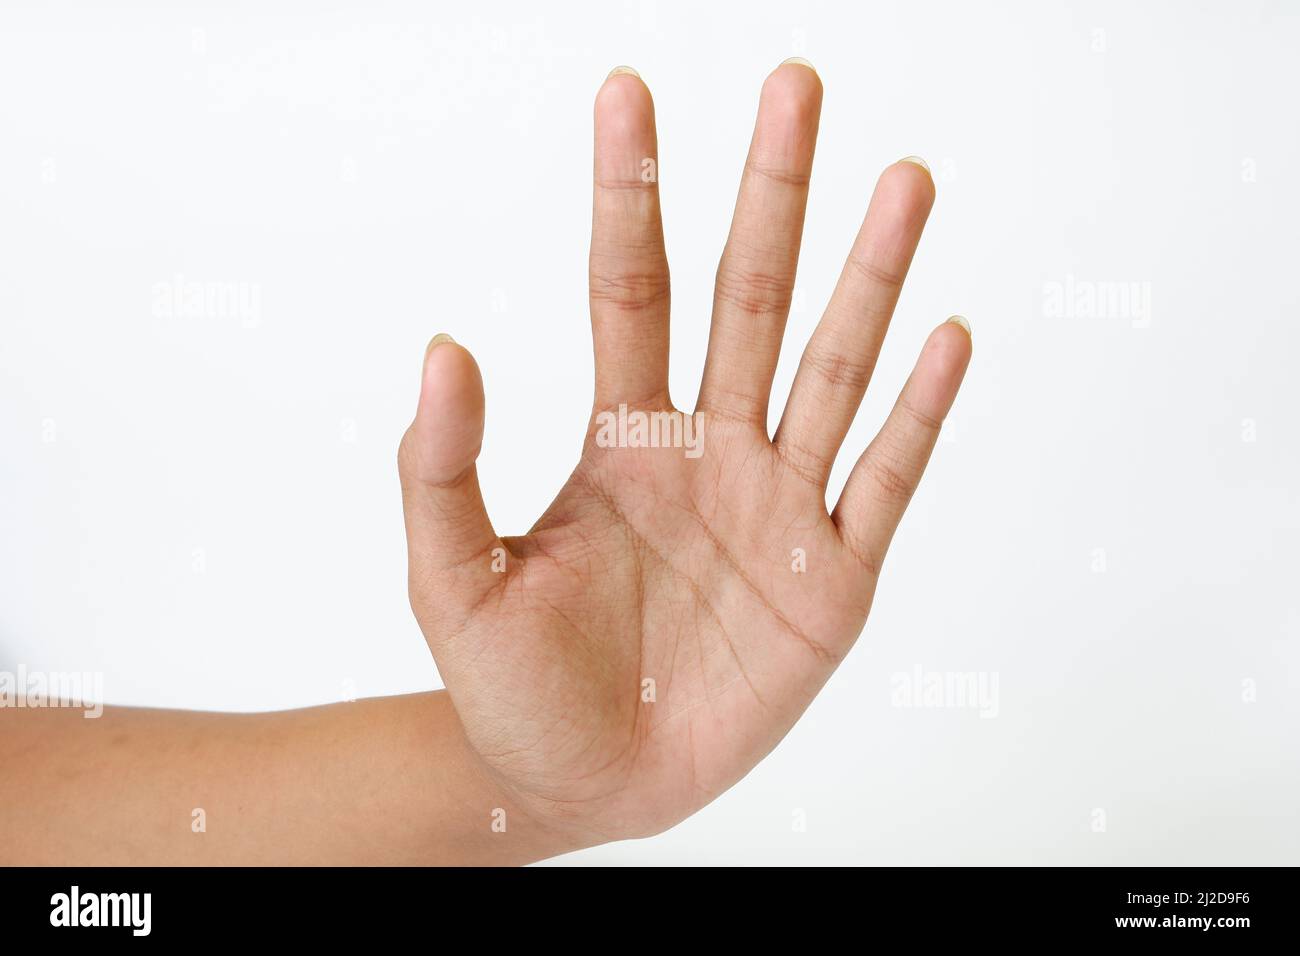 Une main femelle adulte montrant la paume de la main ou le signe au revoir isolé sur un fond blanc Banque D'Images